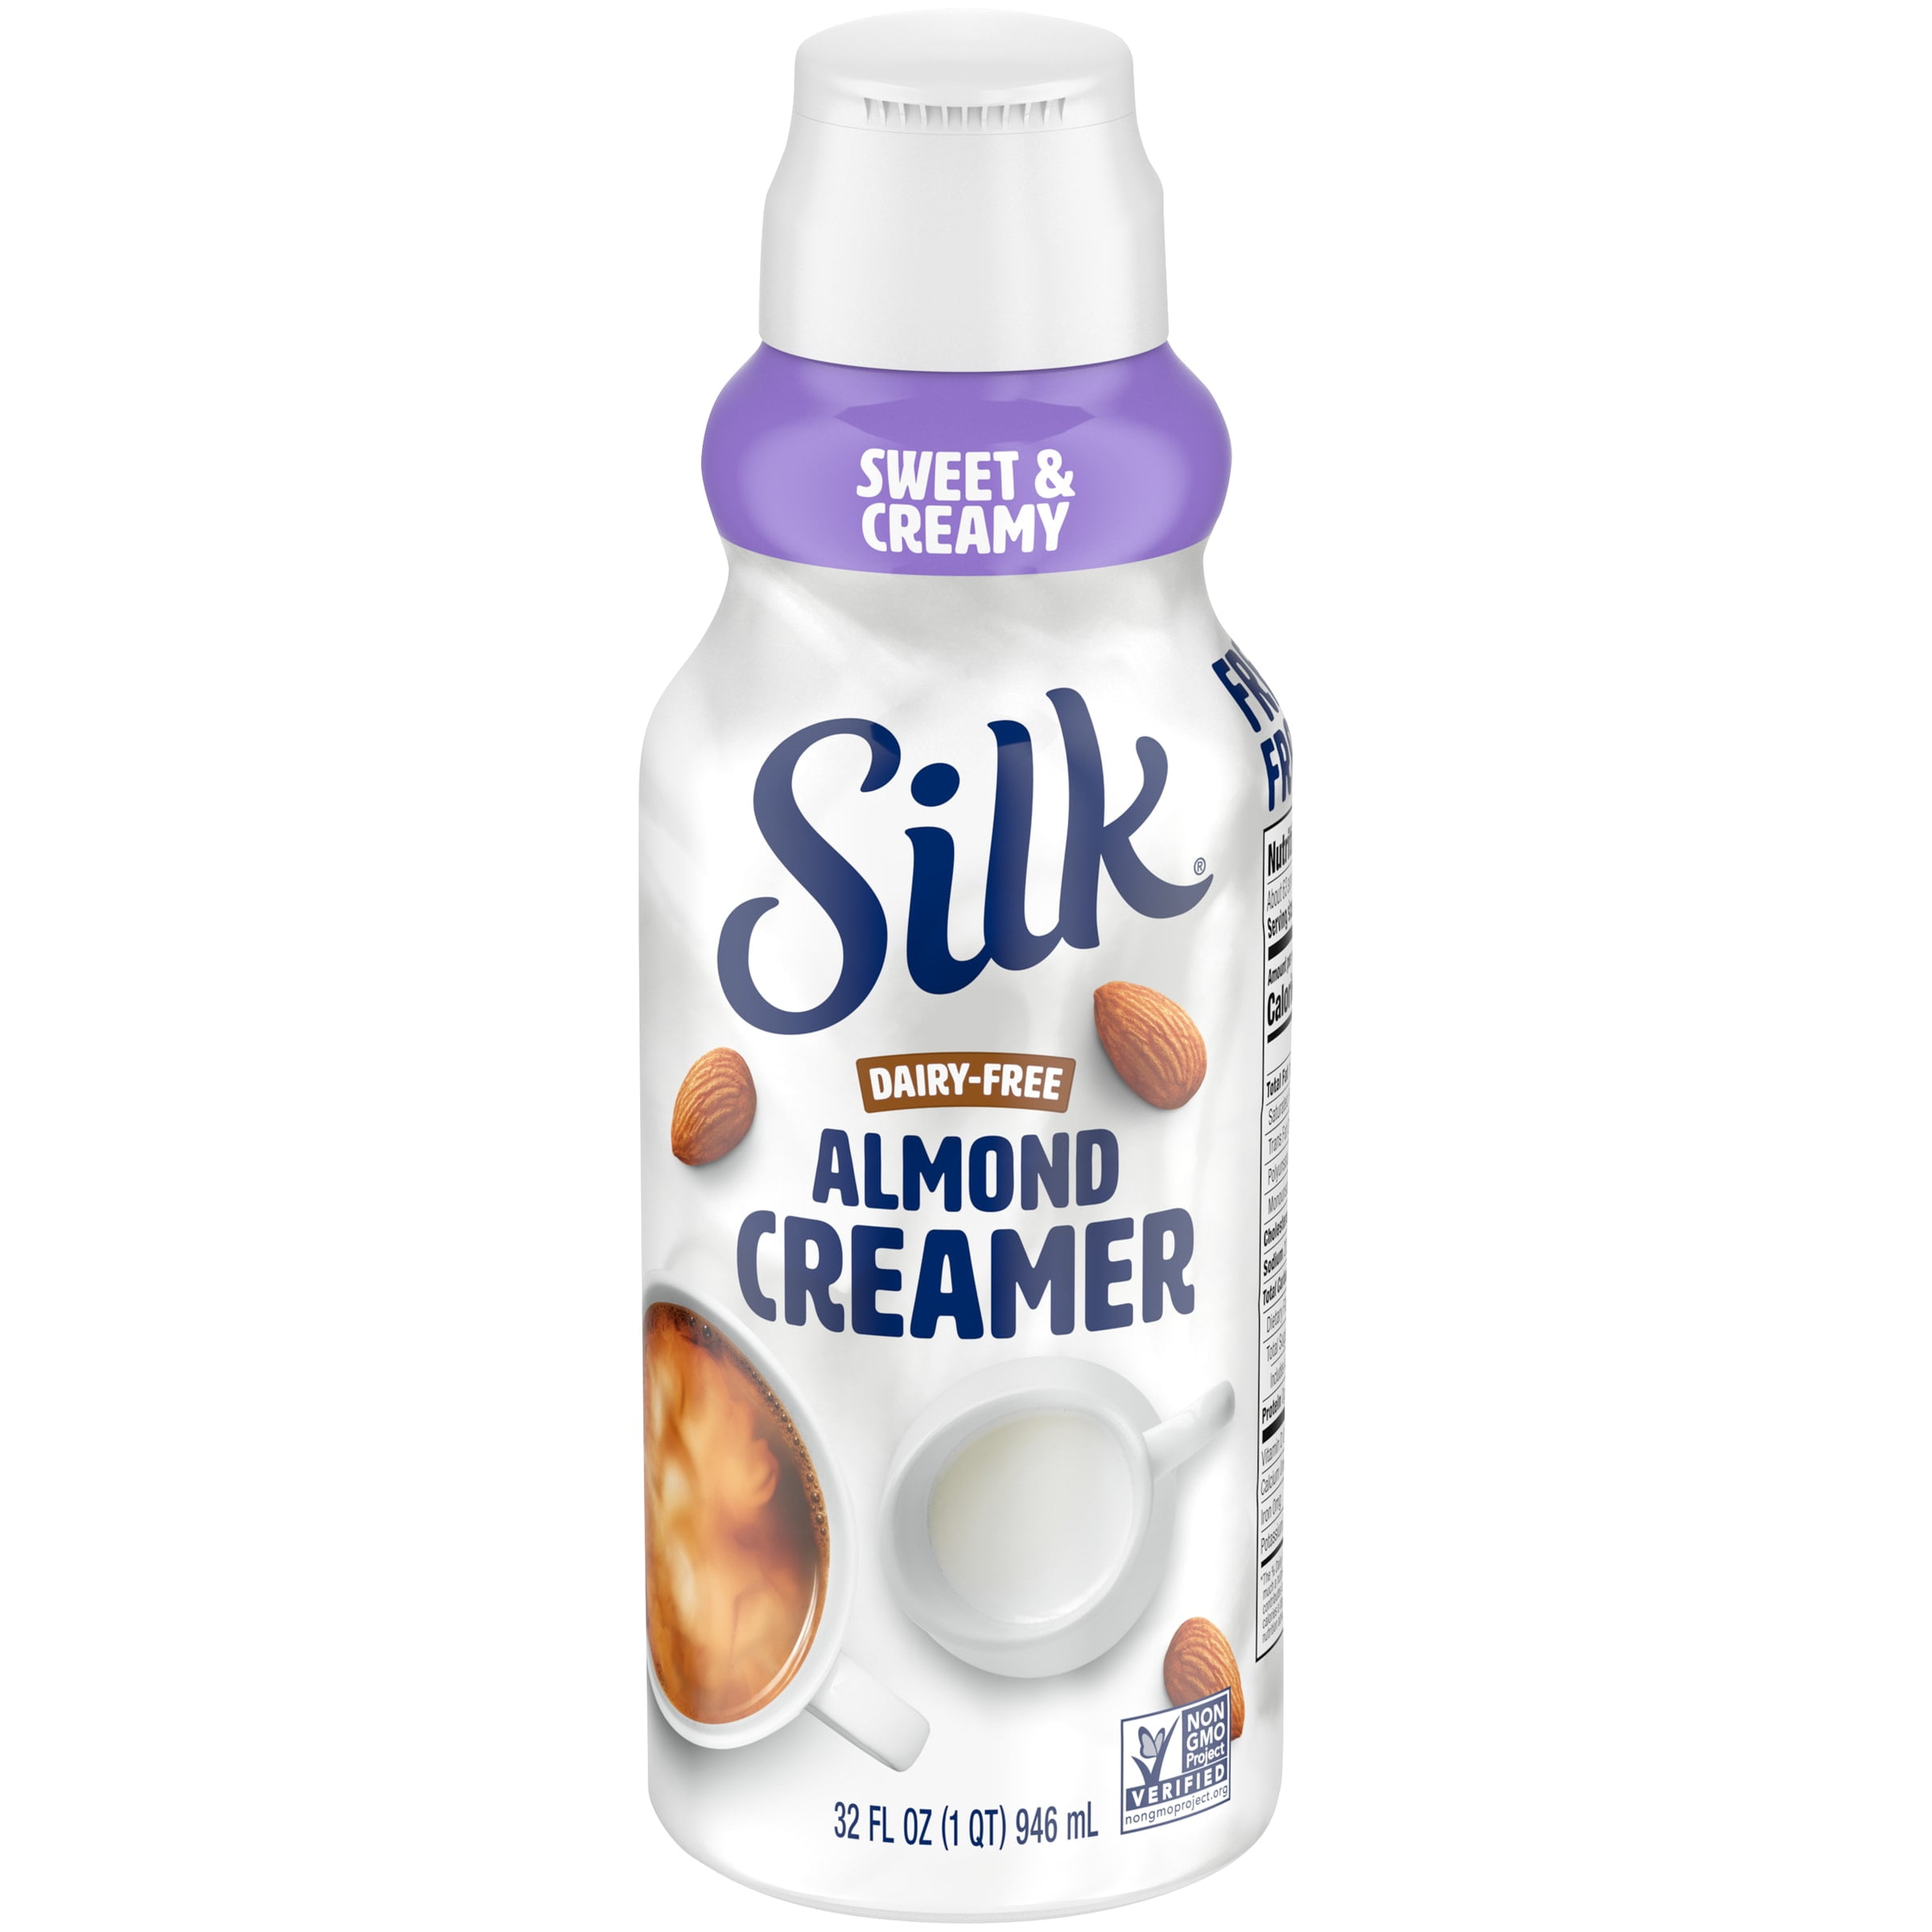 Silk Original Soy Creamer Reviews